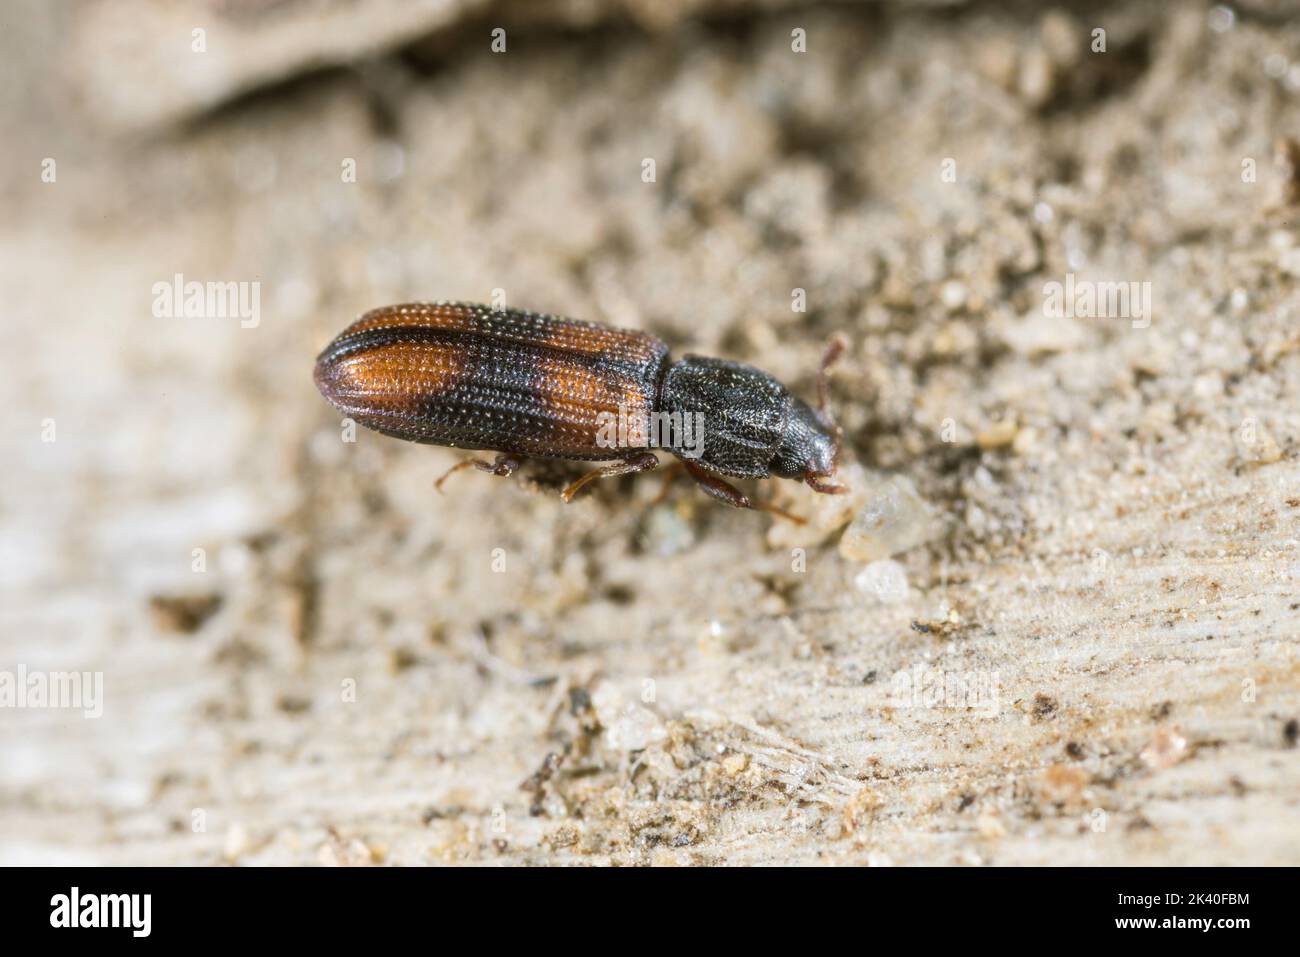 Saddle-backed Bitoma, Wedge-shaped Beetle (Bitoma crenata, Ditoma crenata), sits on deadwood, Germany Stock Photo